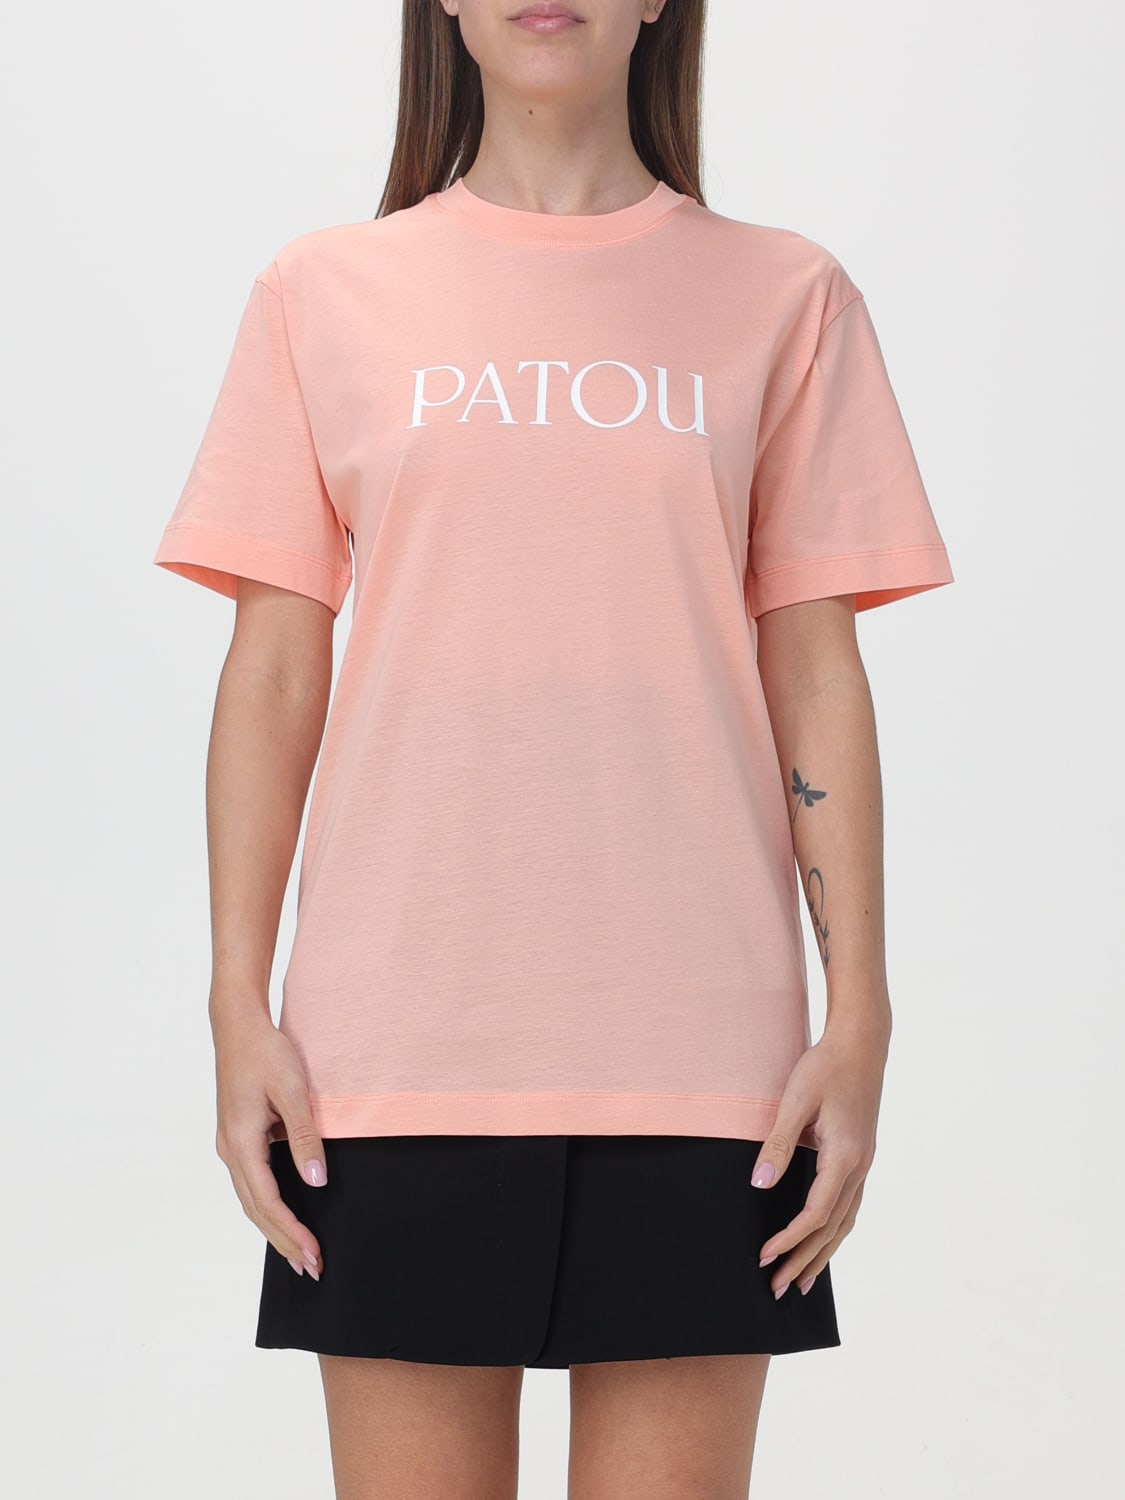 55％以上節約 patouベージュTシャツ (PATOU/Tシャツ レディース